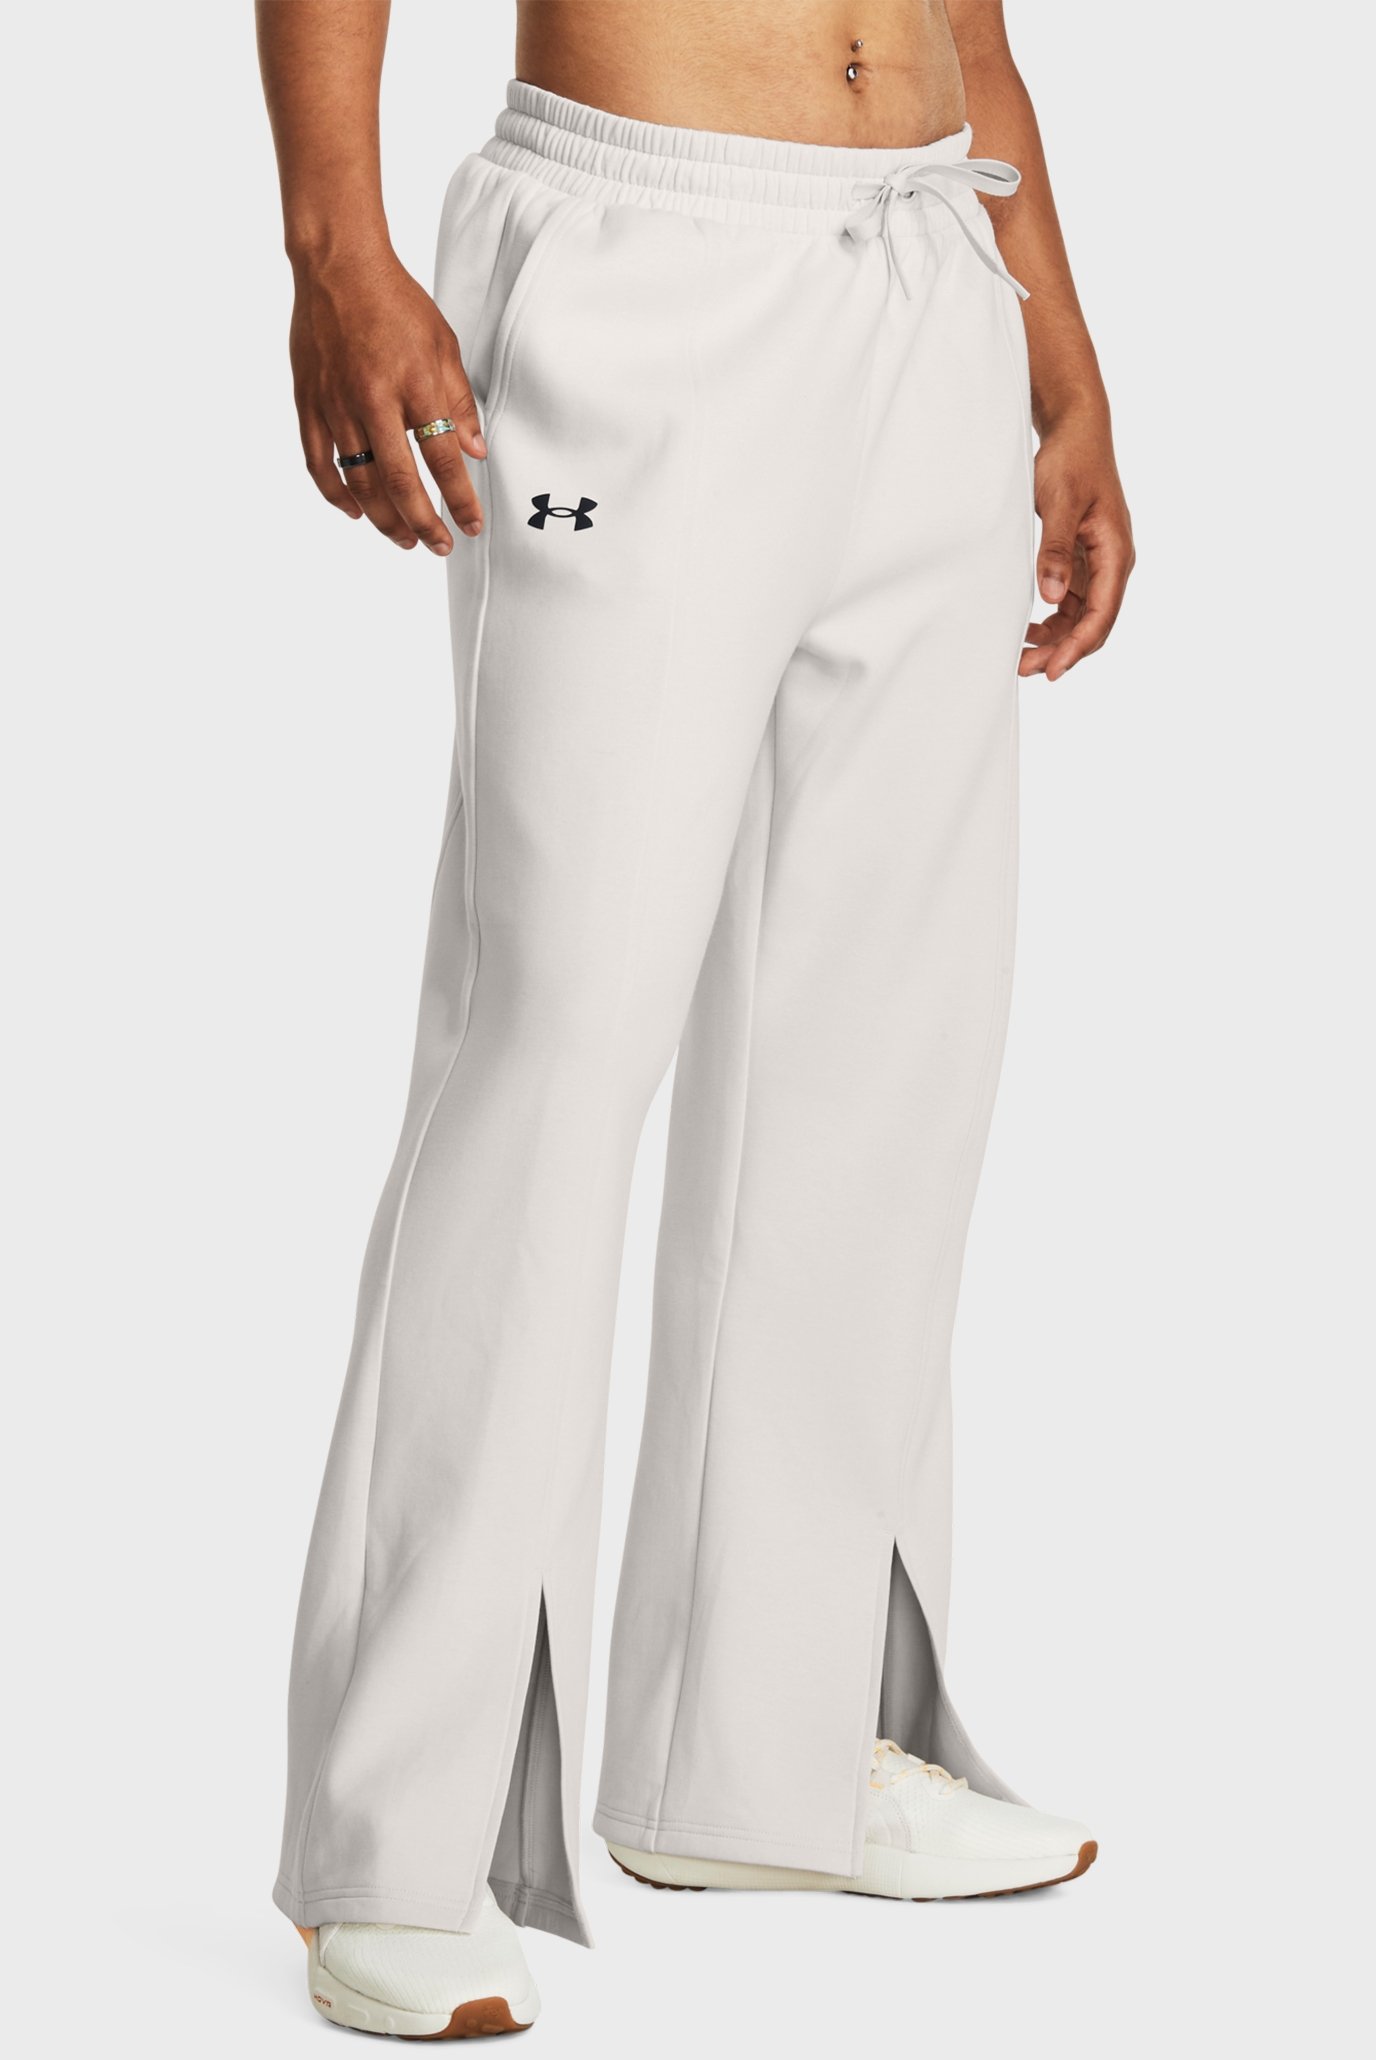 Жіночі білі спортивні штани білі Unstoppable Flc Split Pant 1